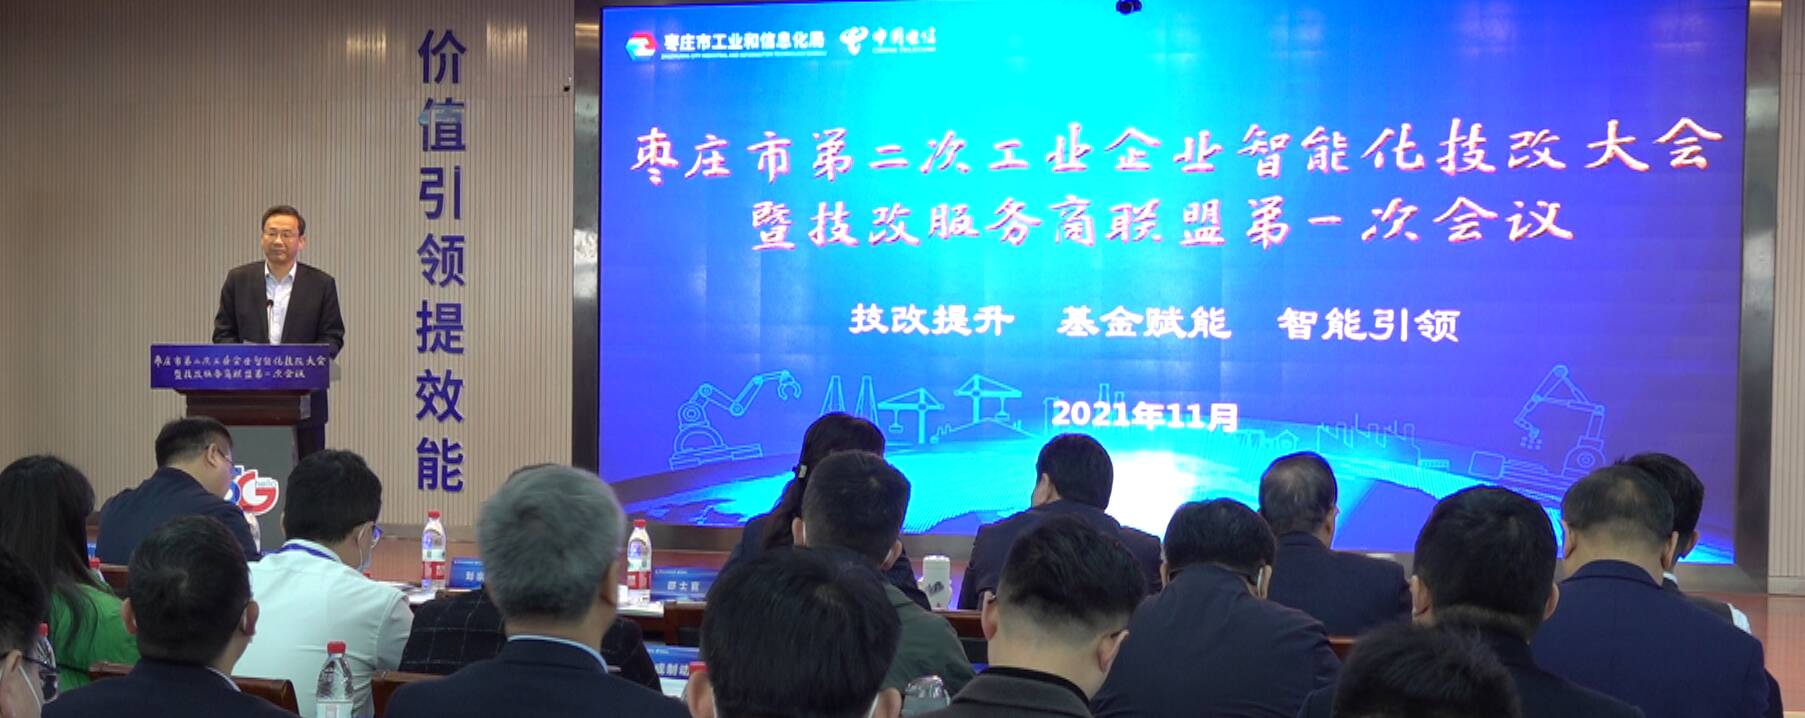 枣庄市召开第二次工业企业智能化技改大会暨技改服务商联盟第一次会议